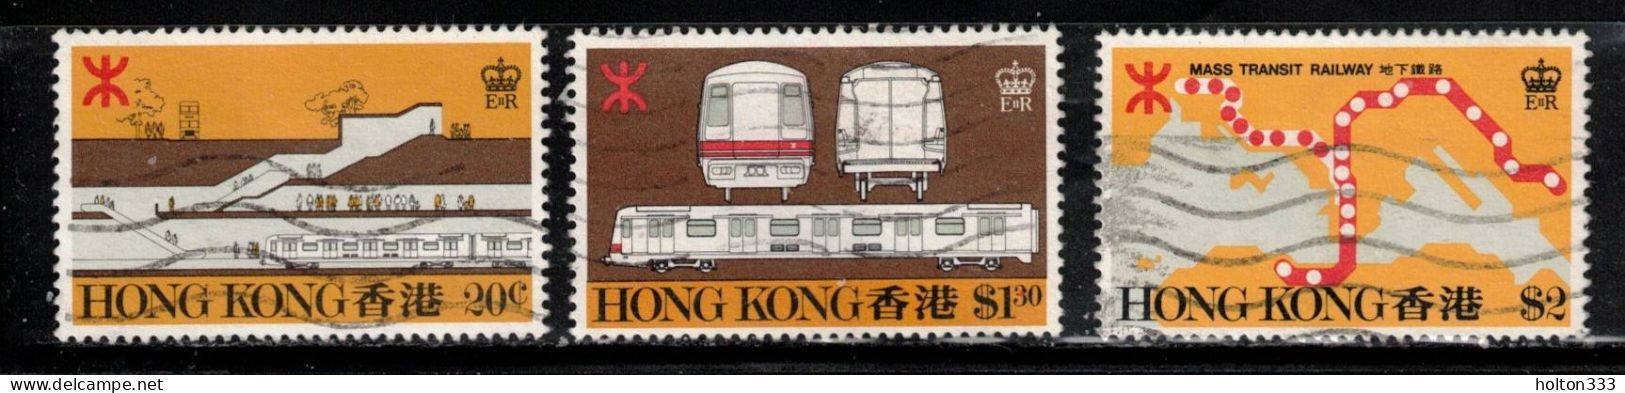 HONG KONG Scott # 358-60 Used - Hong Kong Railway - Gebraucht